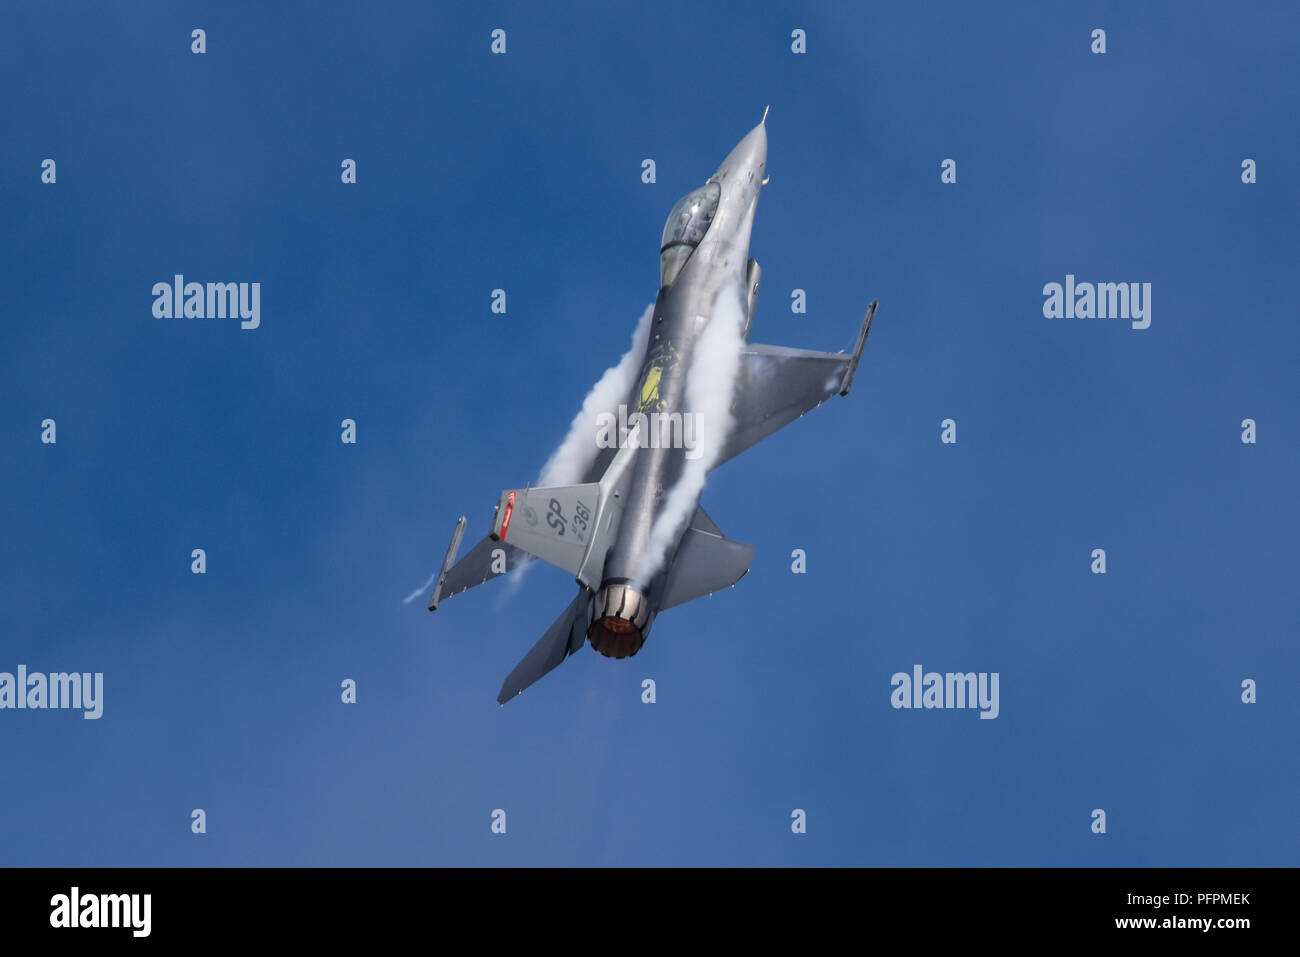 Lockheed Martin F-16 Fighting Falcon avion de chasse à réaction au salon aéronautique international de Farnborough, du 480e escadron de chasse de Spangdahlem, en Allemagne Banque D'Images